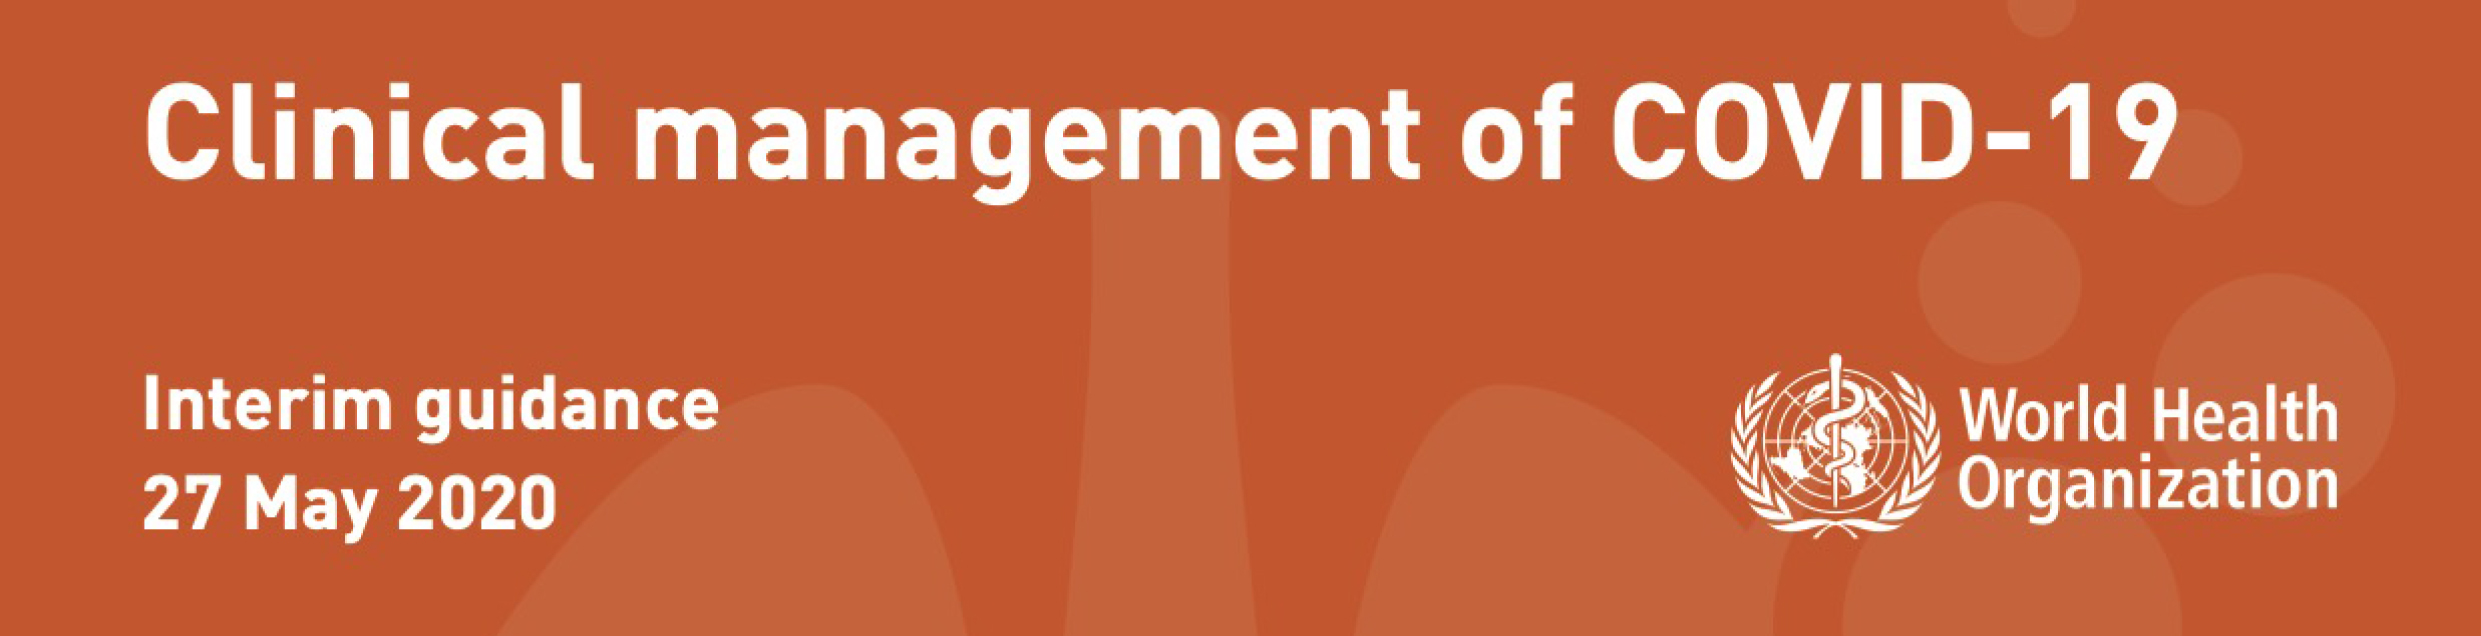 OMS atualiza documento “Clinical management of COVID-19” e inclui capítulo sobre Cuidados Paliativos